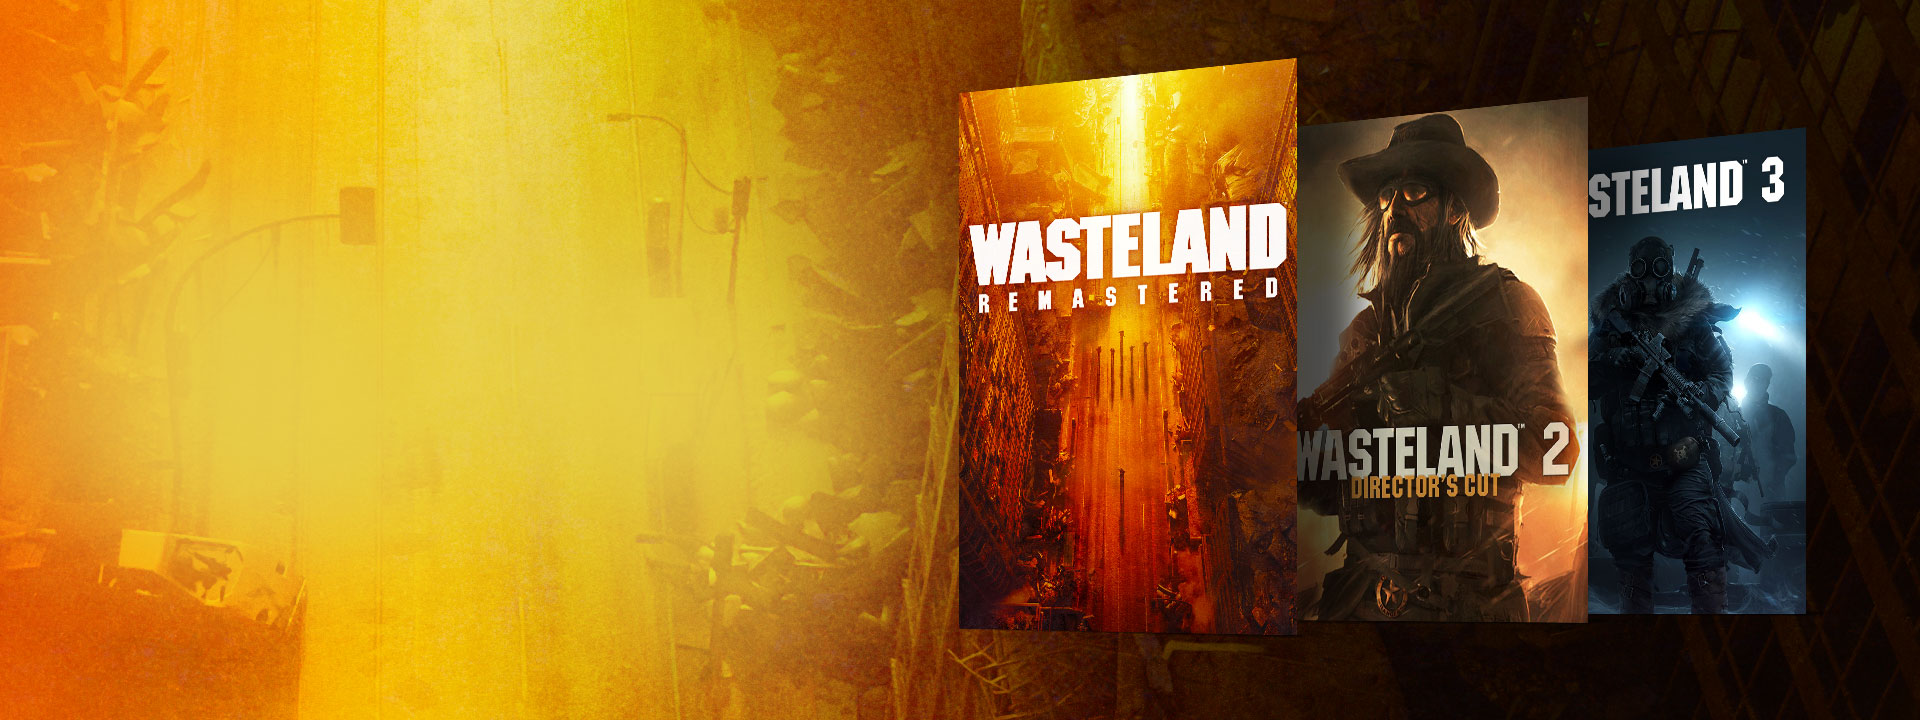 Boxshots von Wasteland Remastered, Wasteland 2 Director's Cut und Wasteland 3. Hintergrund einer verlassenen Straße mit gelben und orangefarbenen Farbtönen